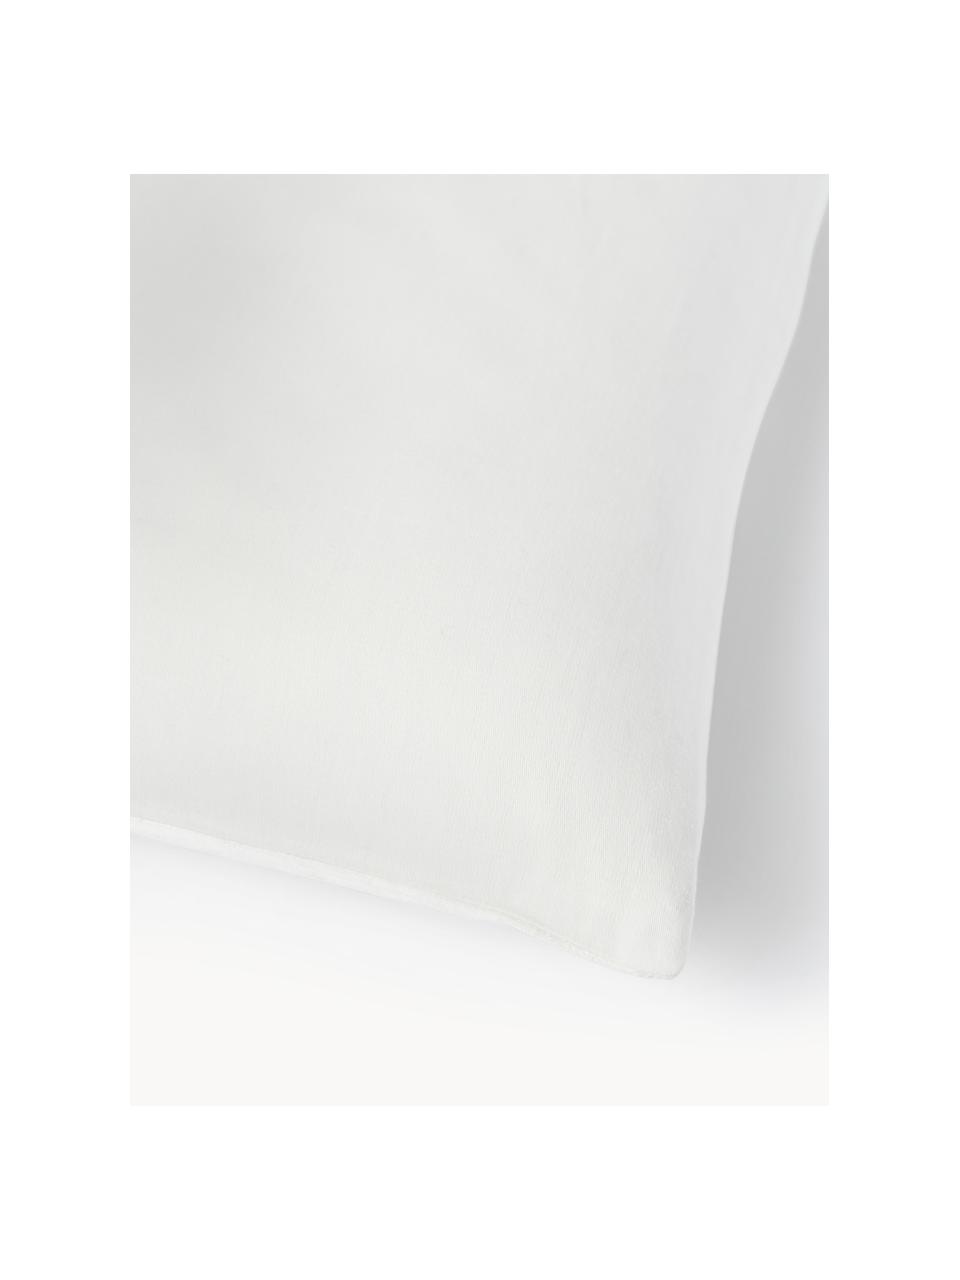 Kissenhülle Aryane aus Seide, Vorderseite: 100 % Seide, Rückseite: 100% Baumwolle, Weiß, B 45 x L 45 cm